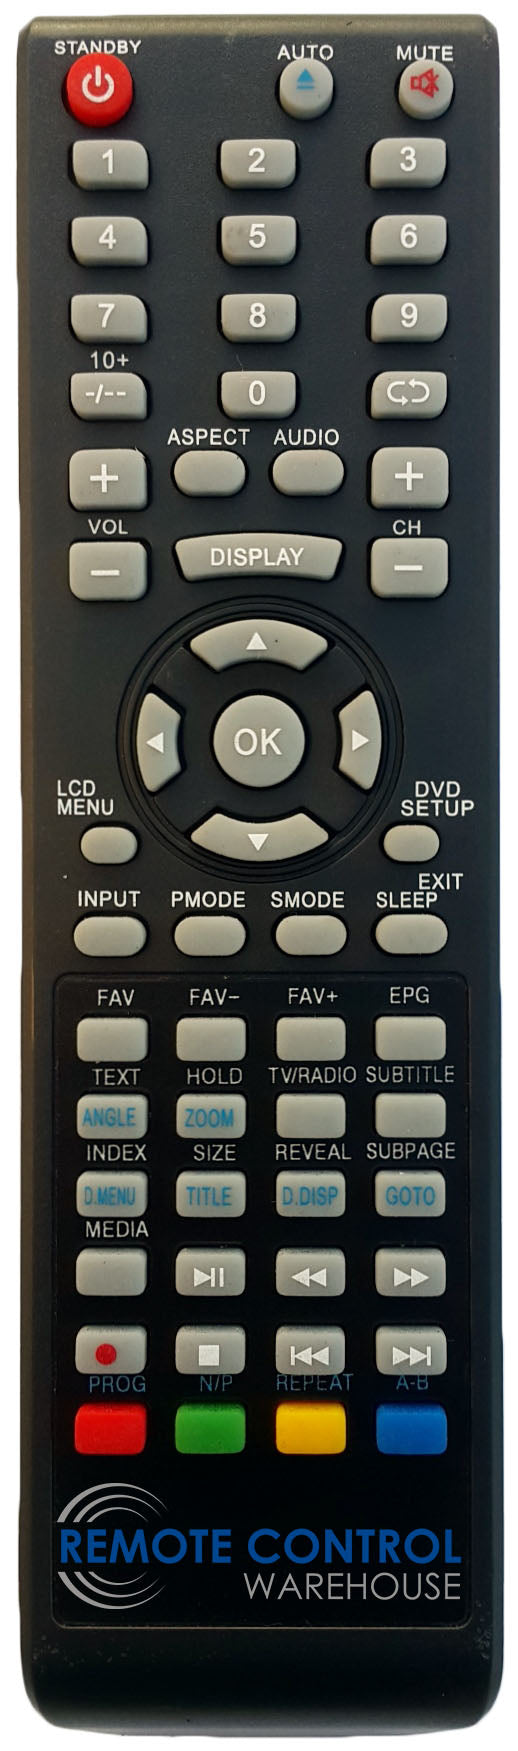 NEONIQ ELH185A0WF3DF LCD TV Replacement Remote Control